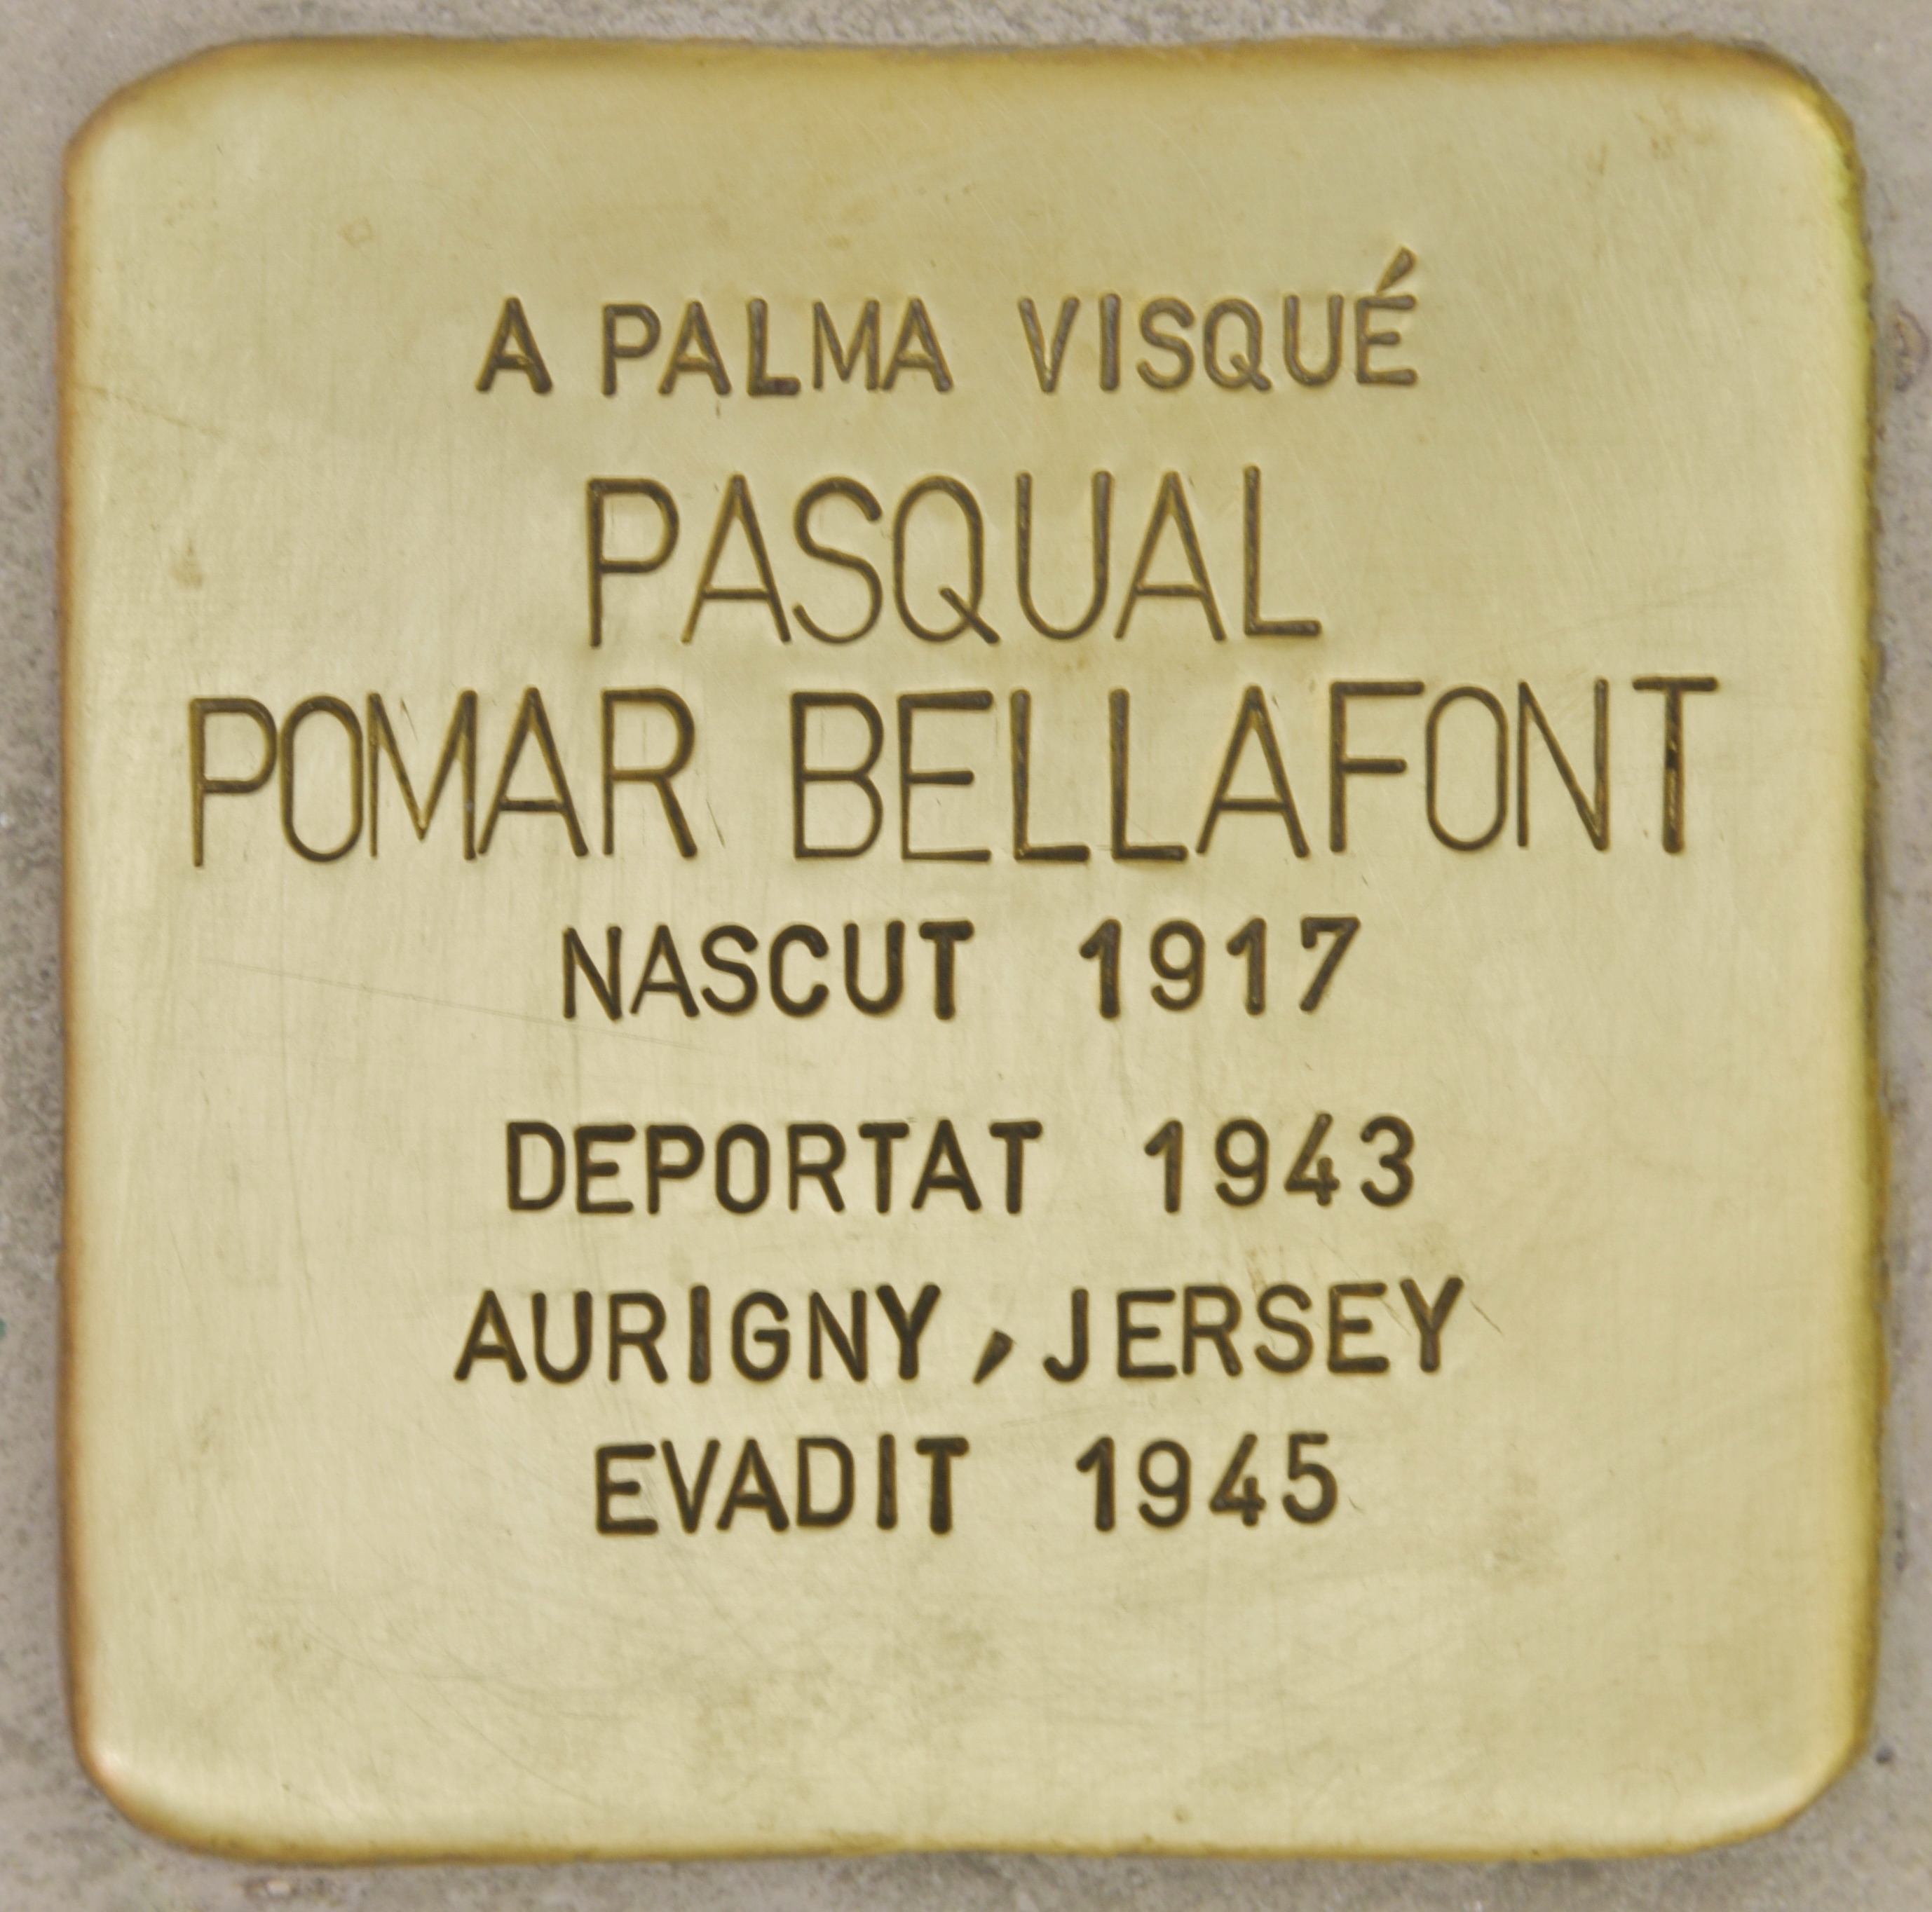 Pasqual Pomar Bellafont